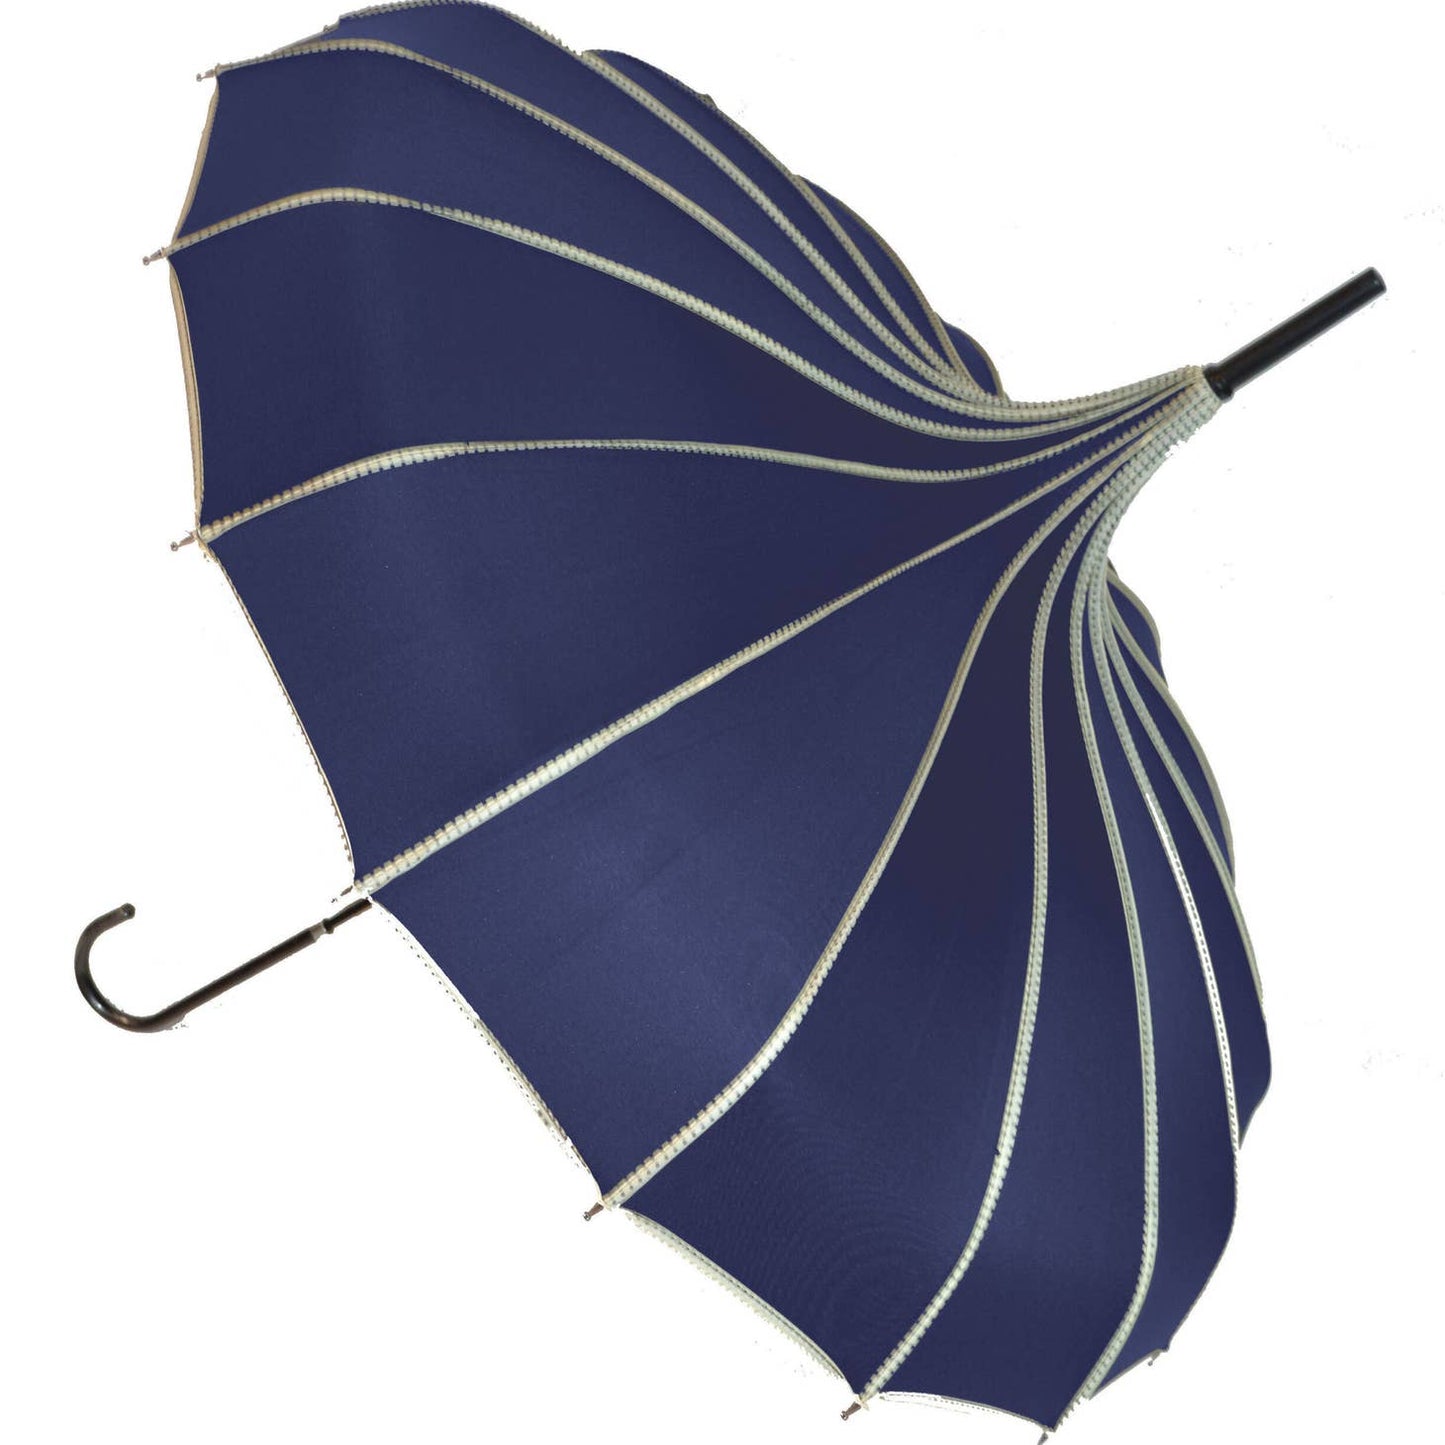 Soake ribbed pagoda Navy umbrella £21.95 if buying in store